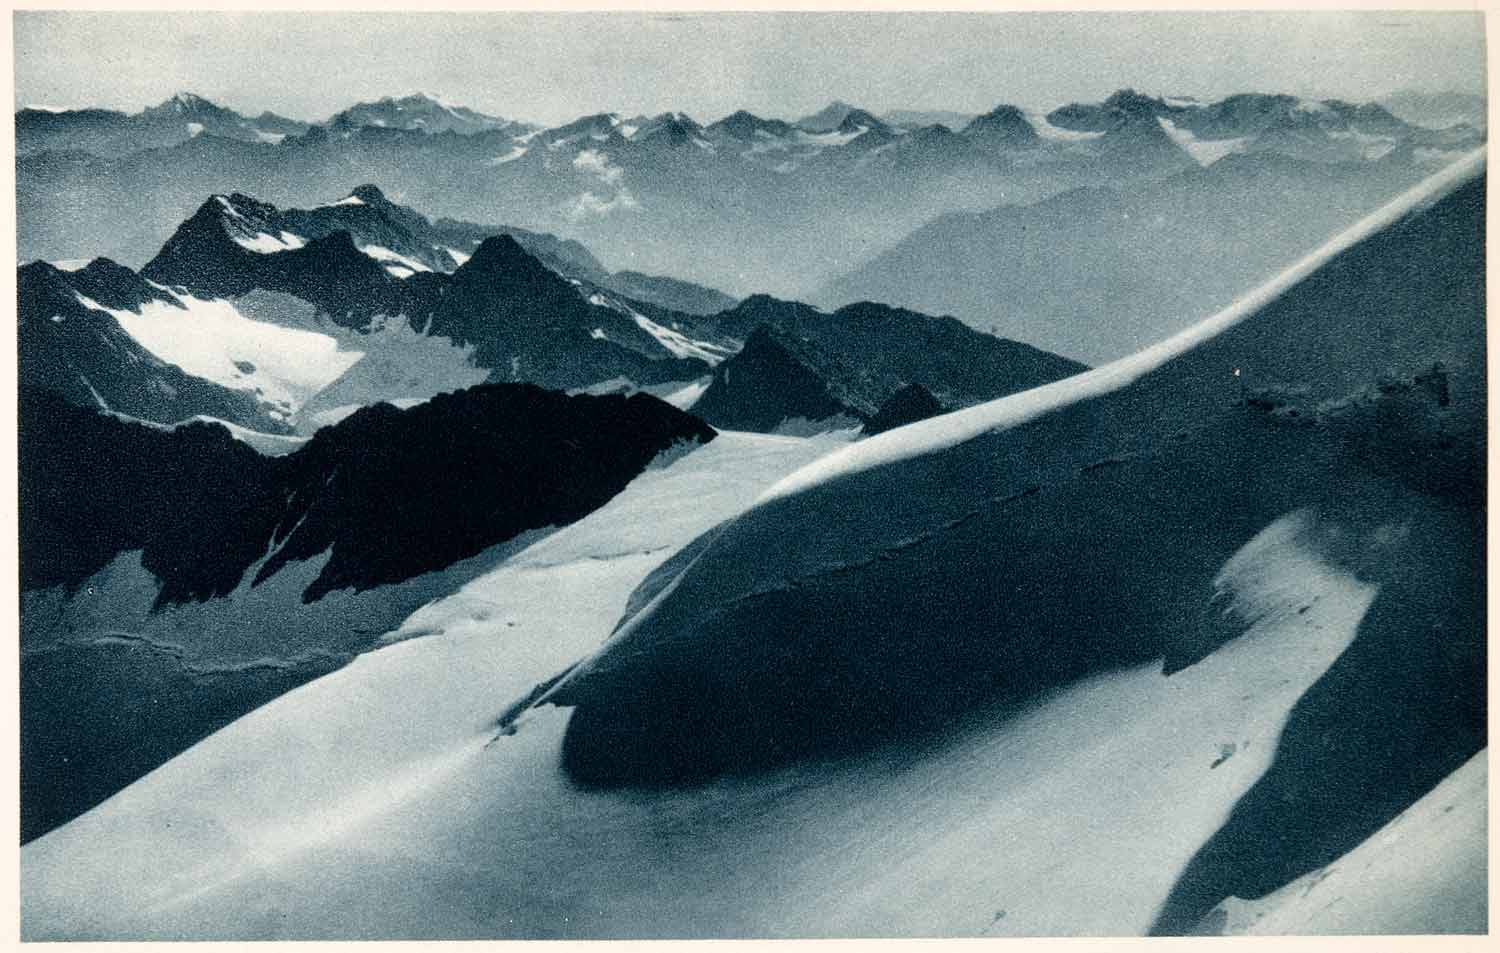 1937 Photogravure Otztal Alps Austria Tyrol Mountains Ranges Europe Snow XGDA6